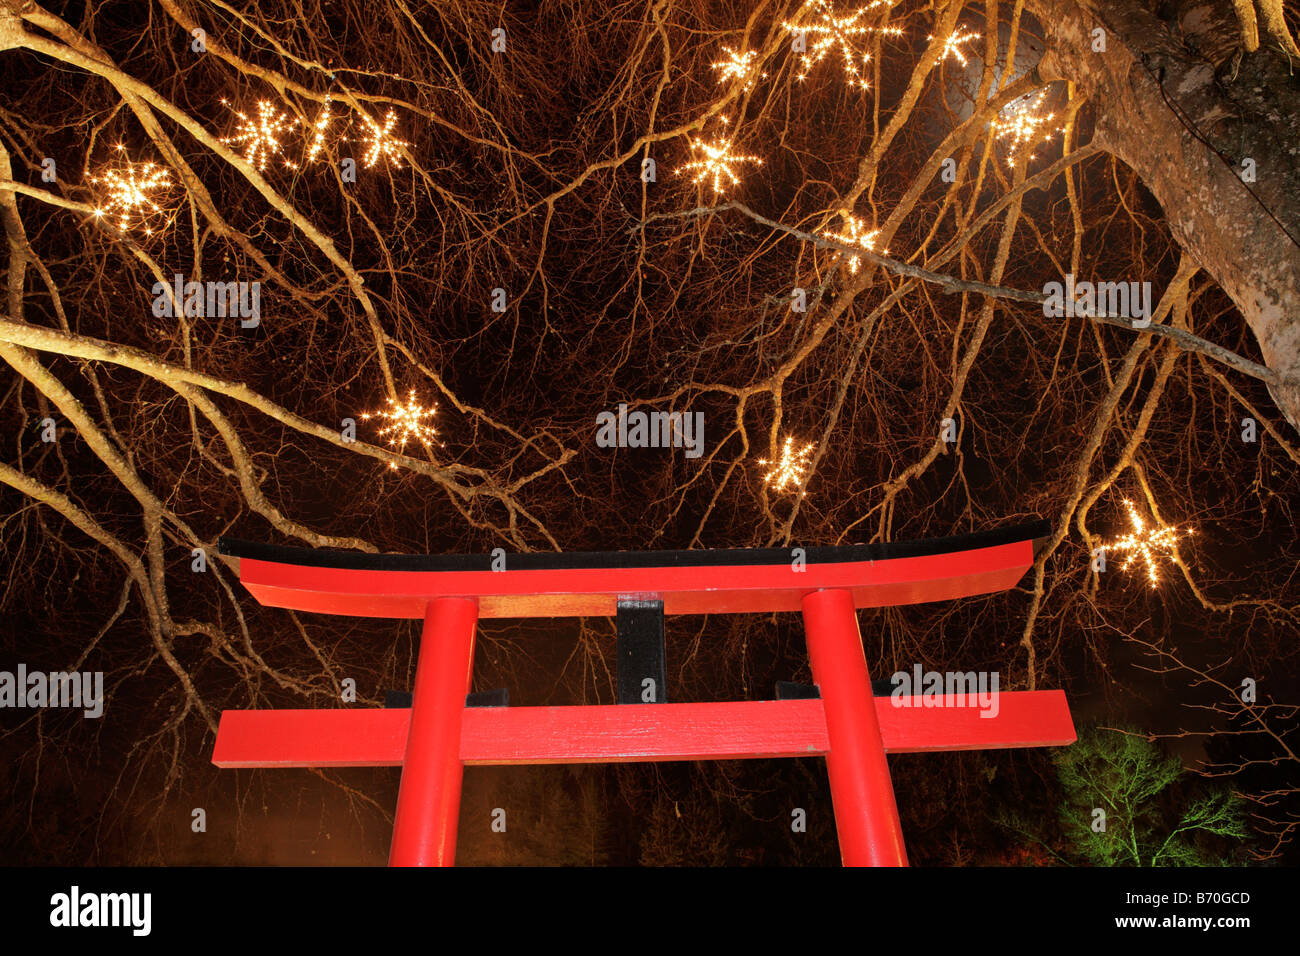 Japanischer Garten Eingang mit Weihnachtsbeleuchtung in der Nacht Butchart Gardens Victoria British Columbia Kanada Stockfoto